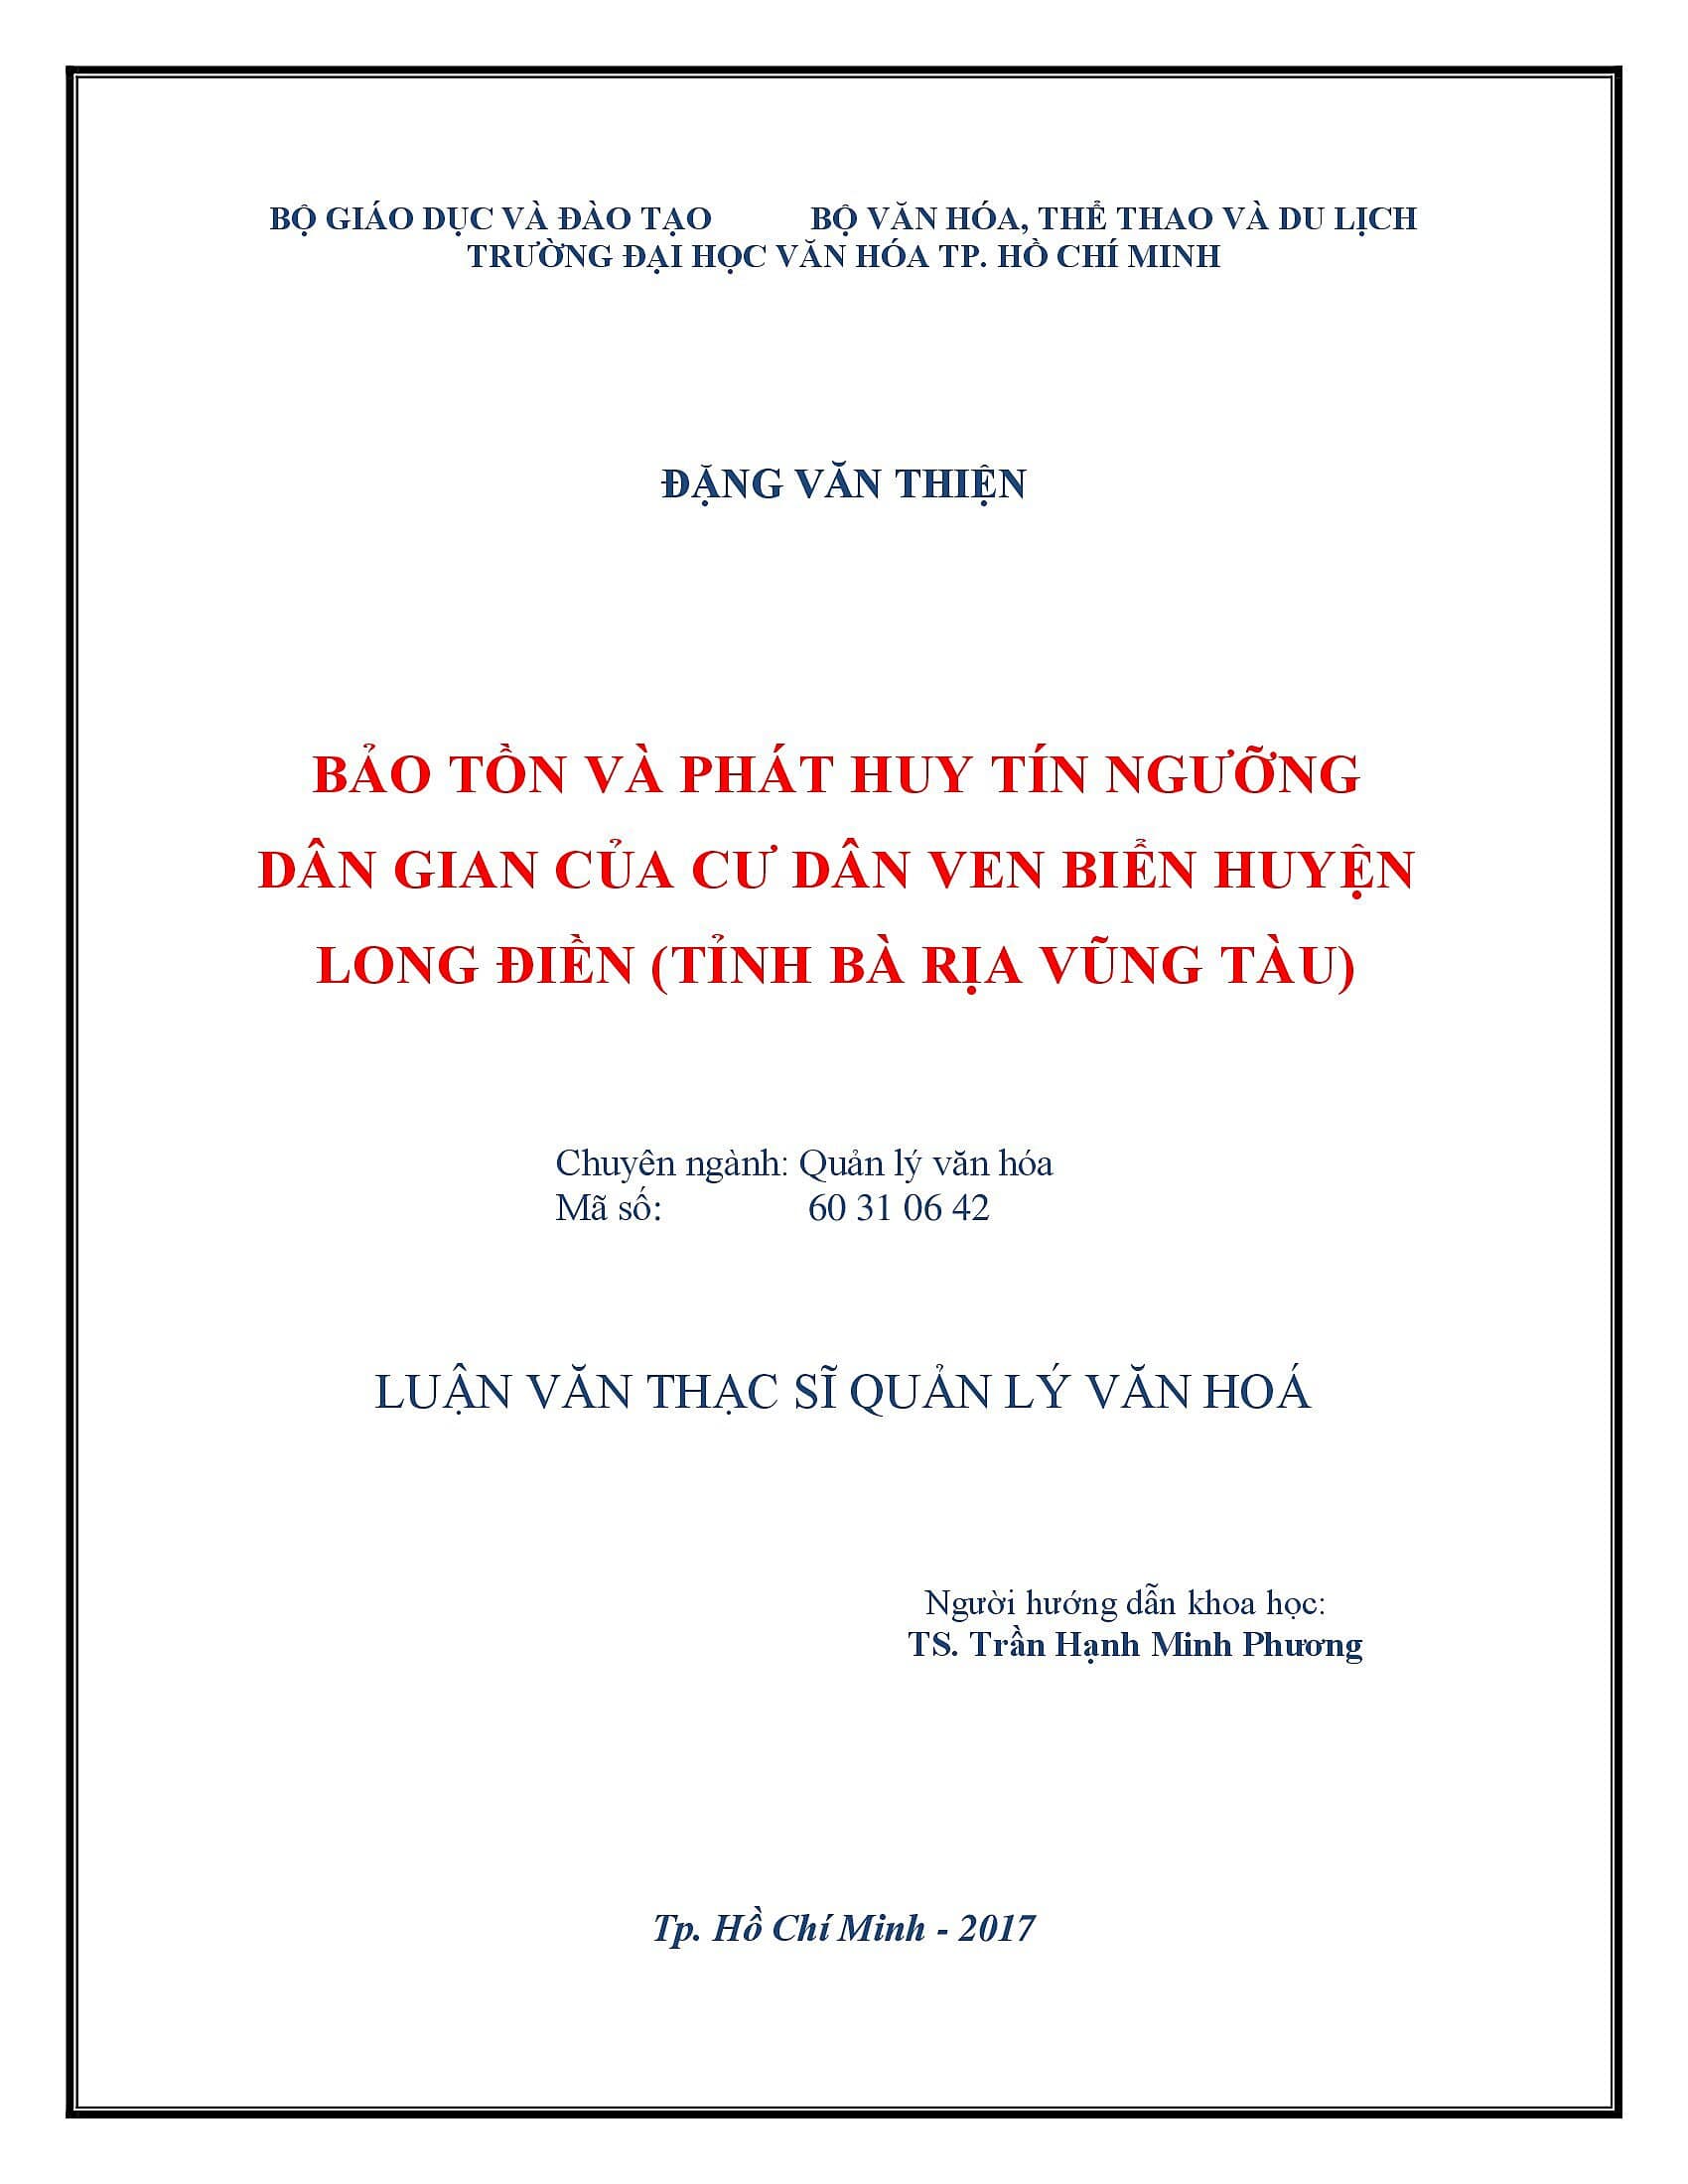 Bảo tồn và phát huy văn hóa truyền thống của người Tày ở thôn 12, Xã Lộc Ngãi, Huyện Bảo Lâm, Tỉnh Lâm Đồng